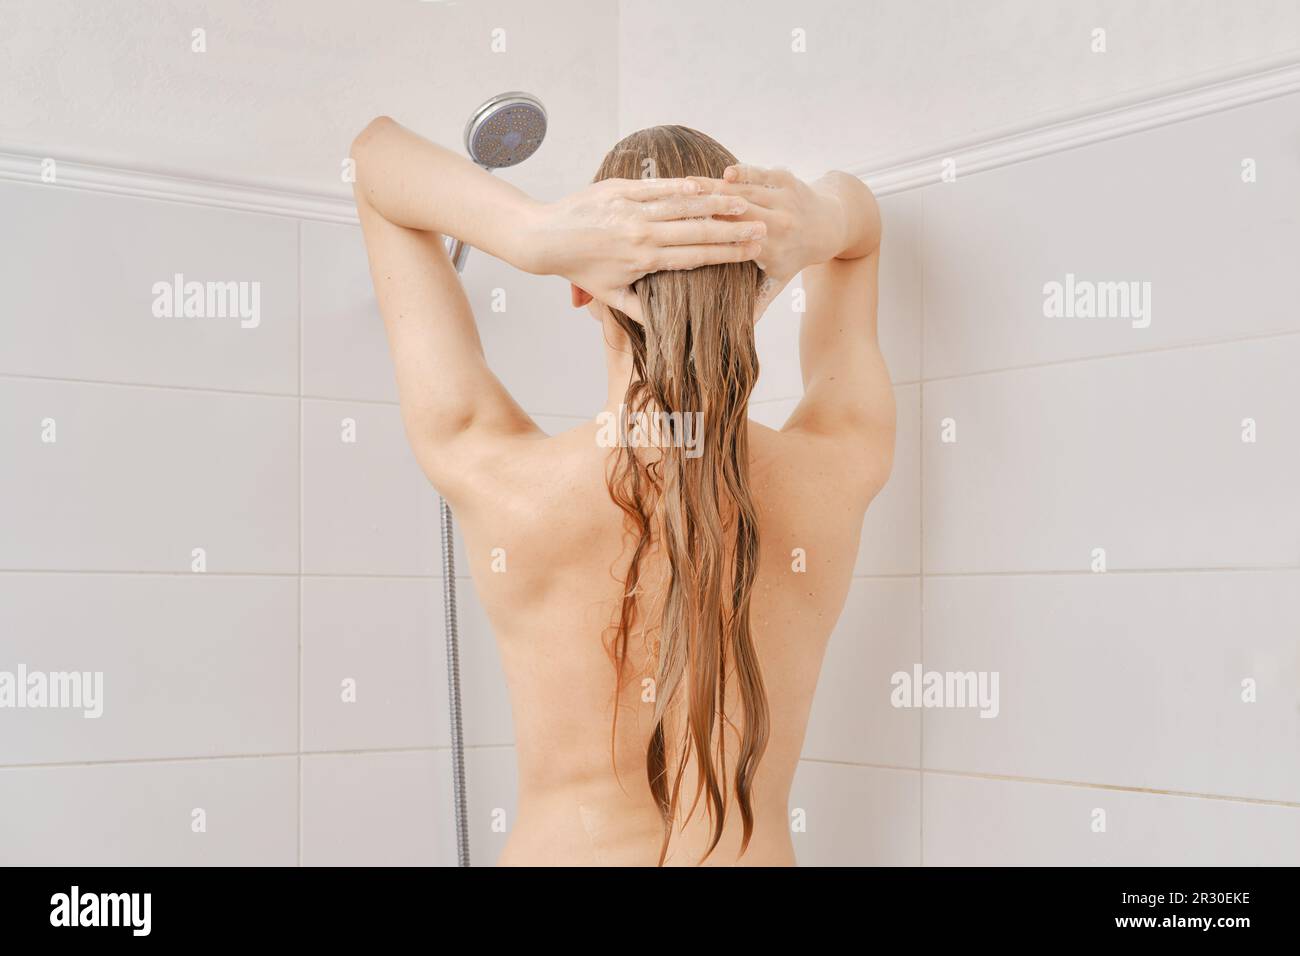 Rückansicht einer jungen Frau mit gesunder Haut wäscht ihr Haar mit Shampoo im Badezimmer Stockfoto